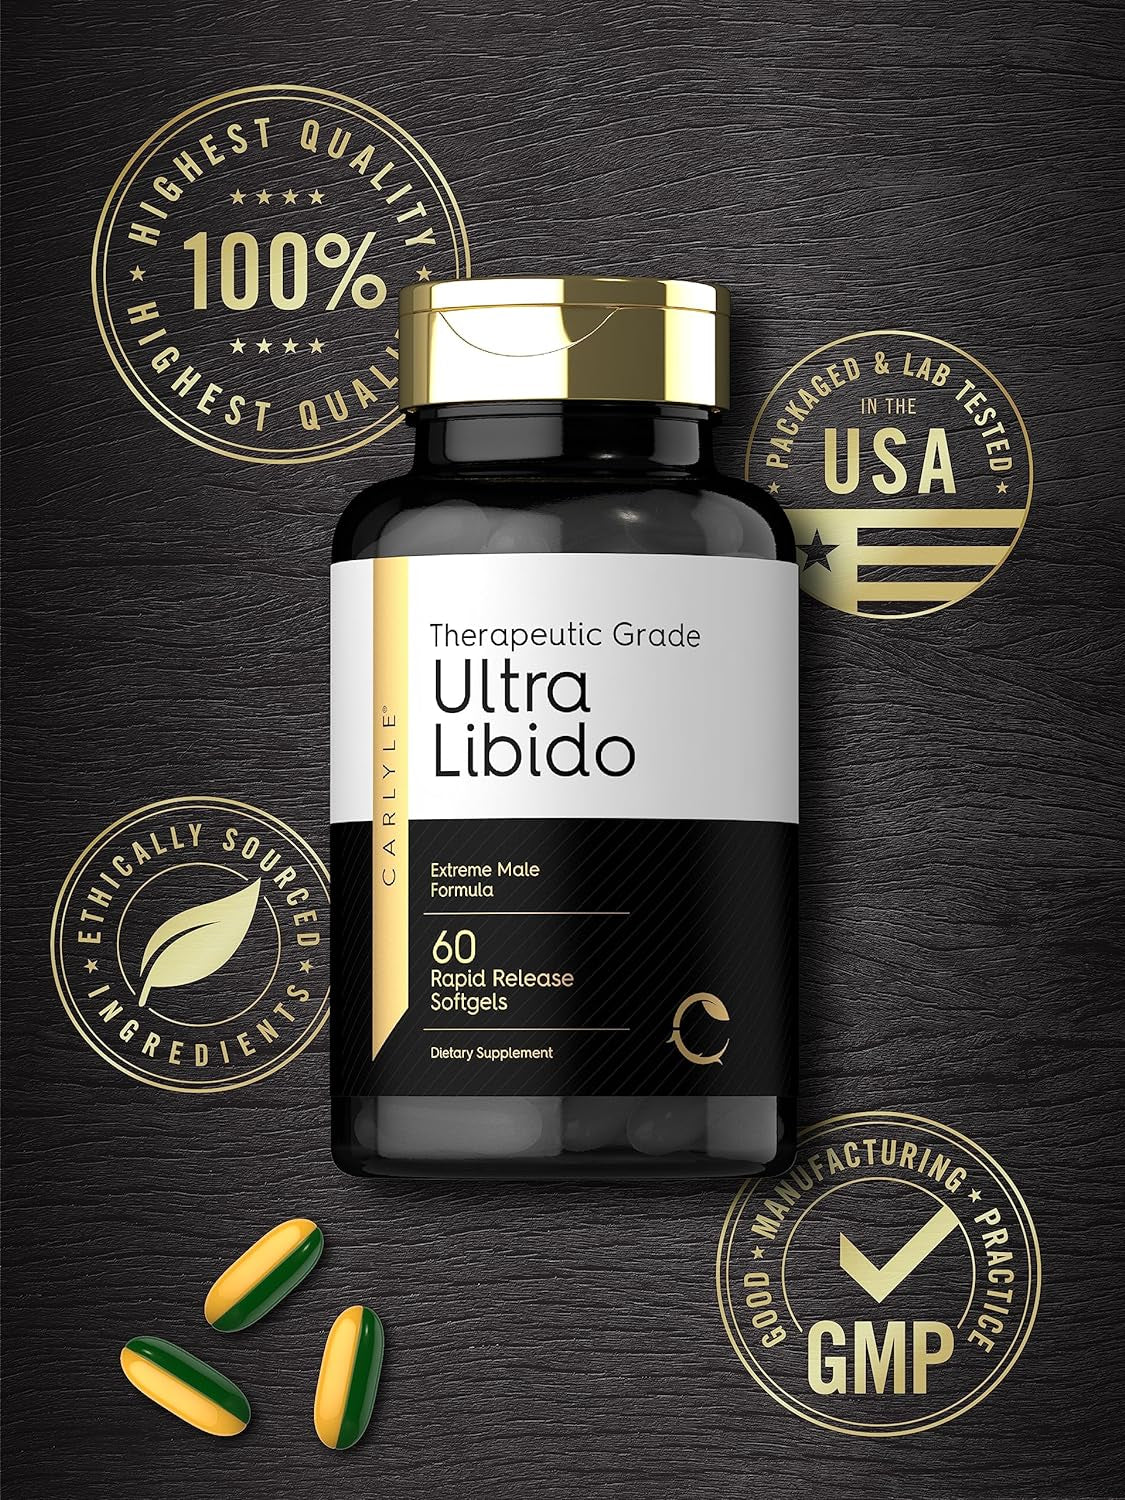 Carlyle Ultra Libido | 60 Softgels | Extreme Male Formula | Therapeutic Grade | Non-Gmo & Gluten Free Supplement